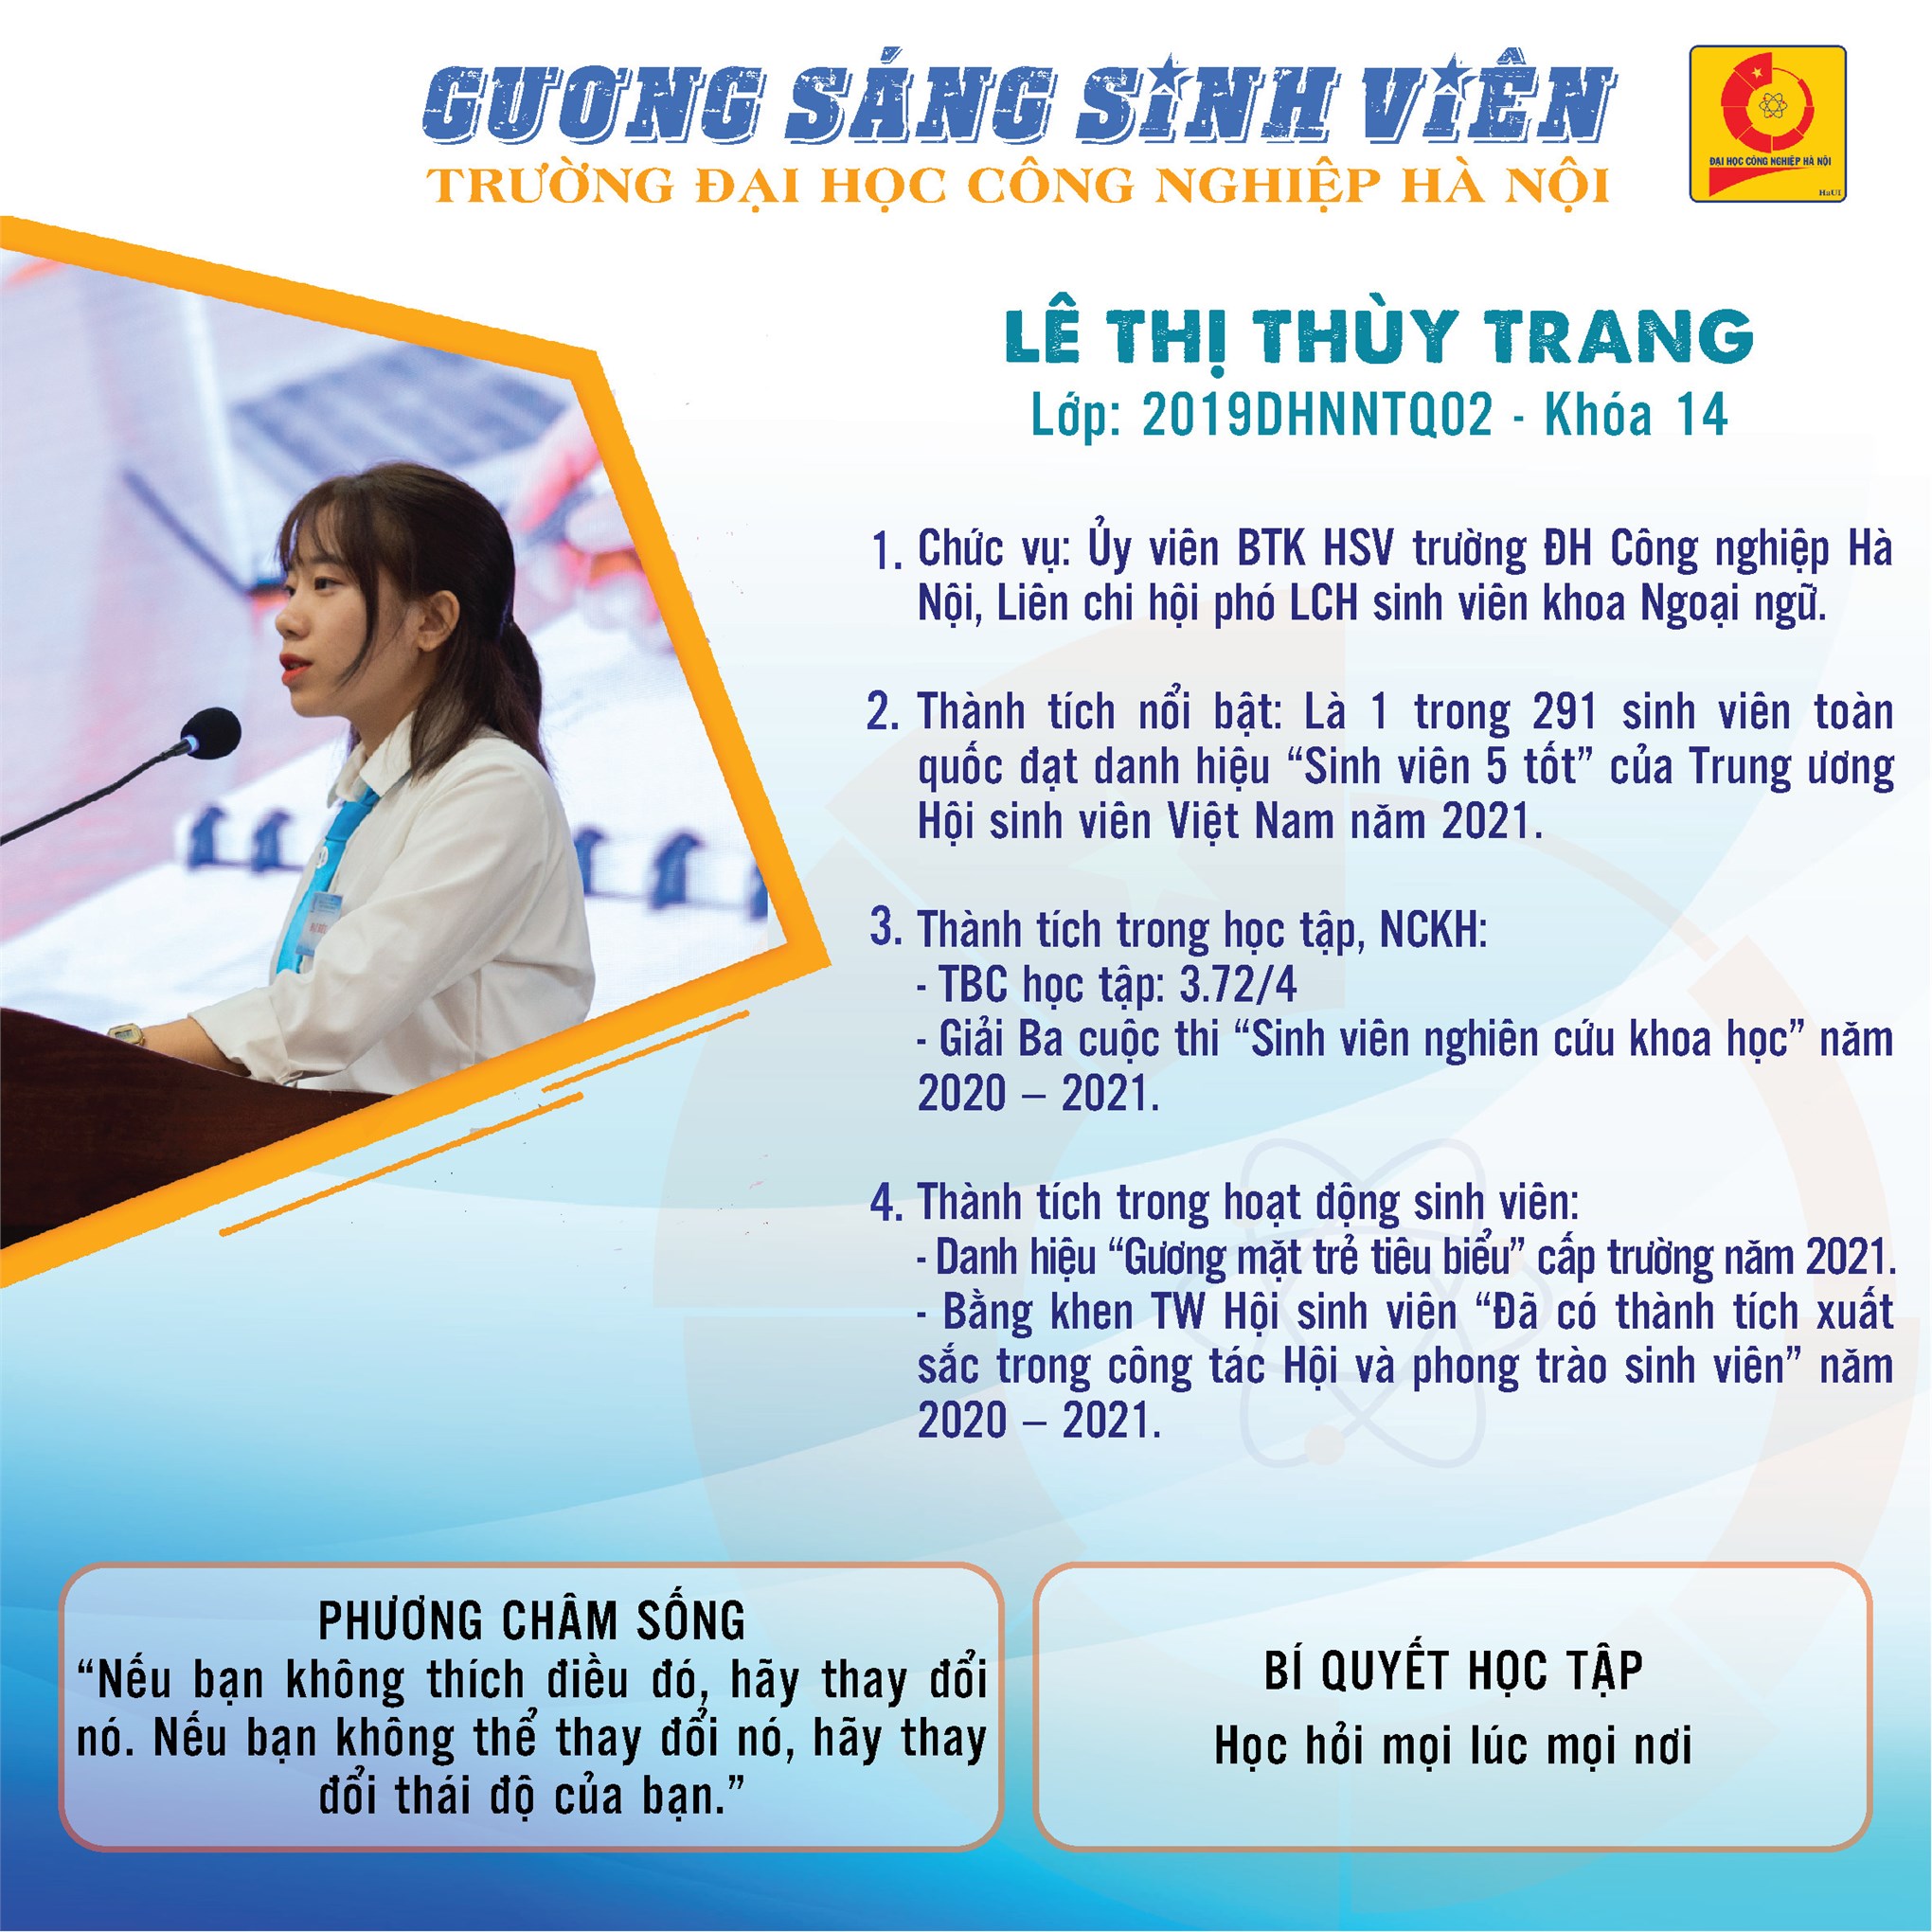 Lê Thị Thùy Trang - SV 5 tốt cấp Trung ương năm 2021: Hãy học hỏi mọi lúc, mọi nơi!